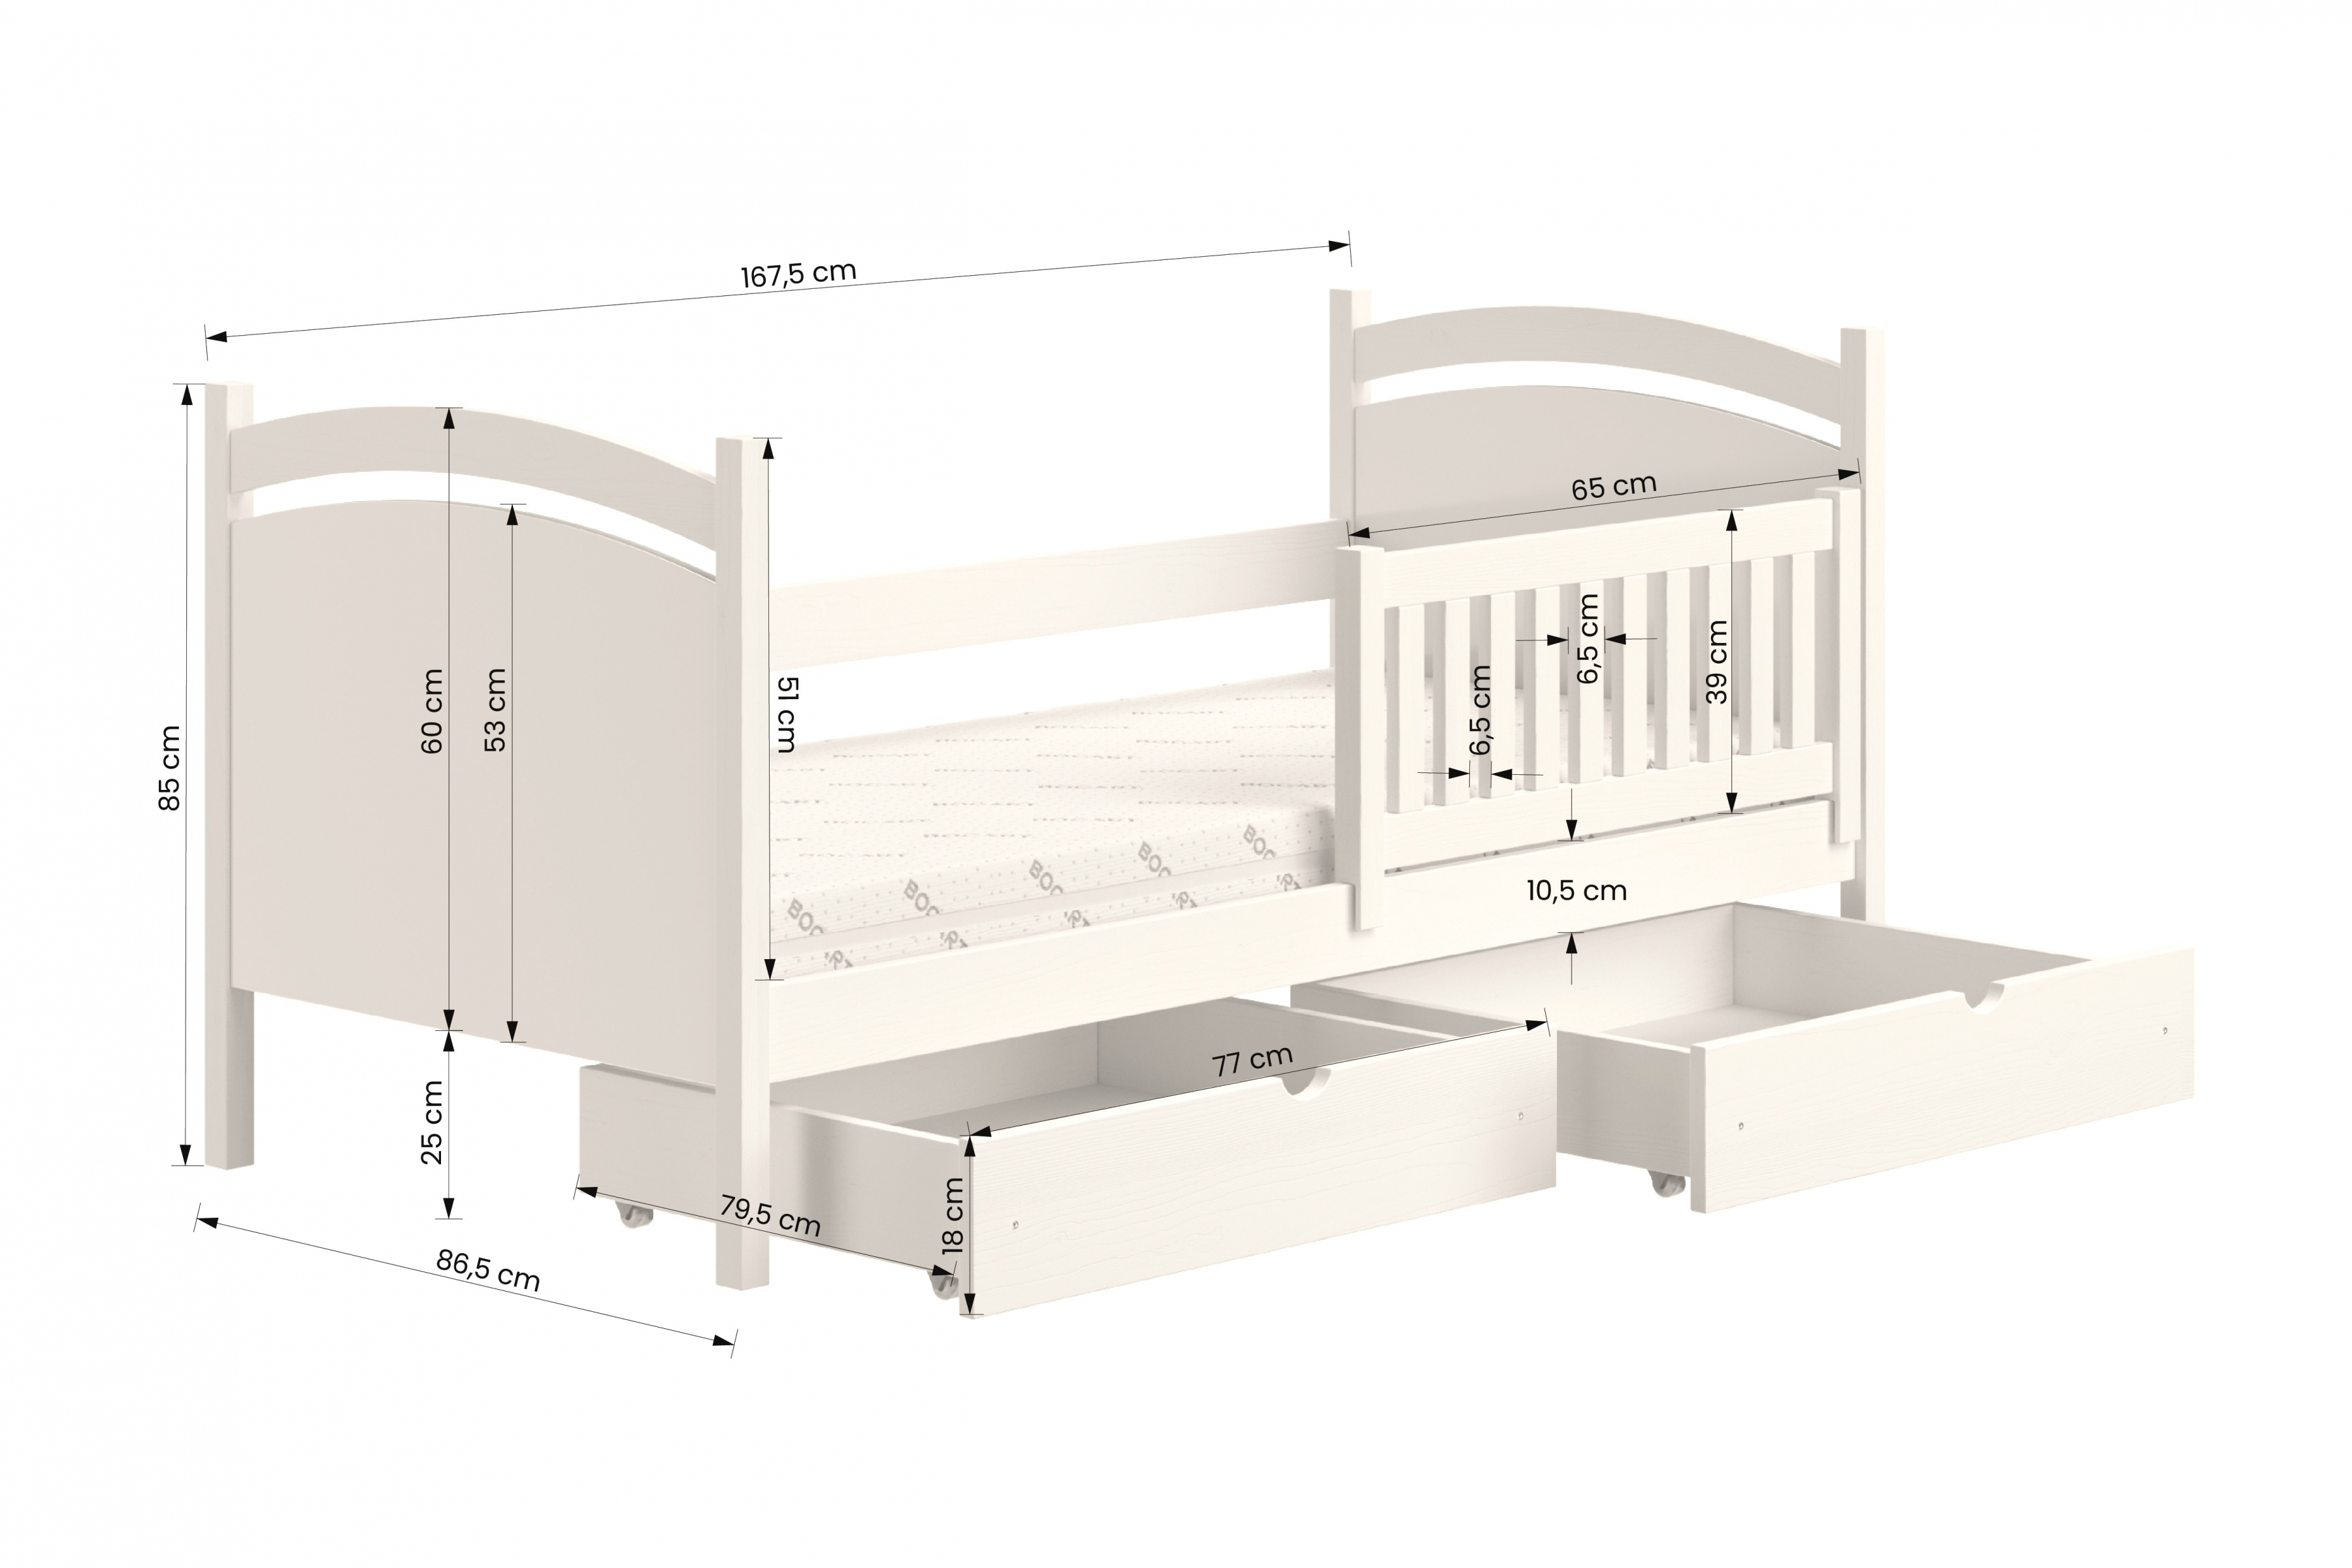 Detská posteľ s tabuľou Amely - Farba šedý, rozmer 80x160 Posteľ dzieciece z tablica suchoscieralna Amely - Rozmery